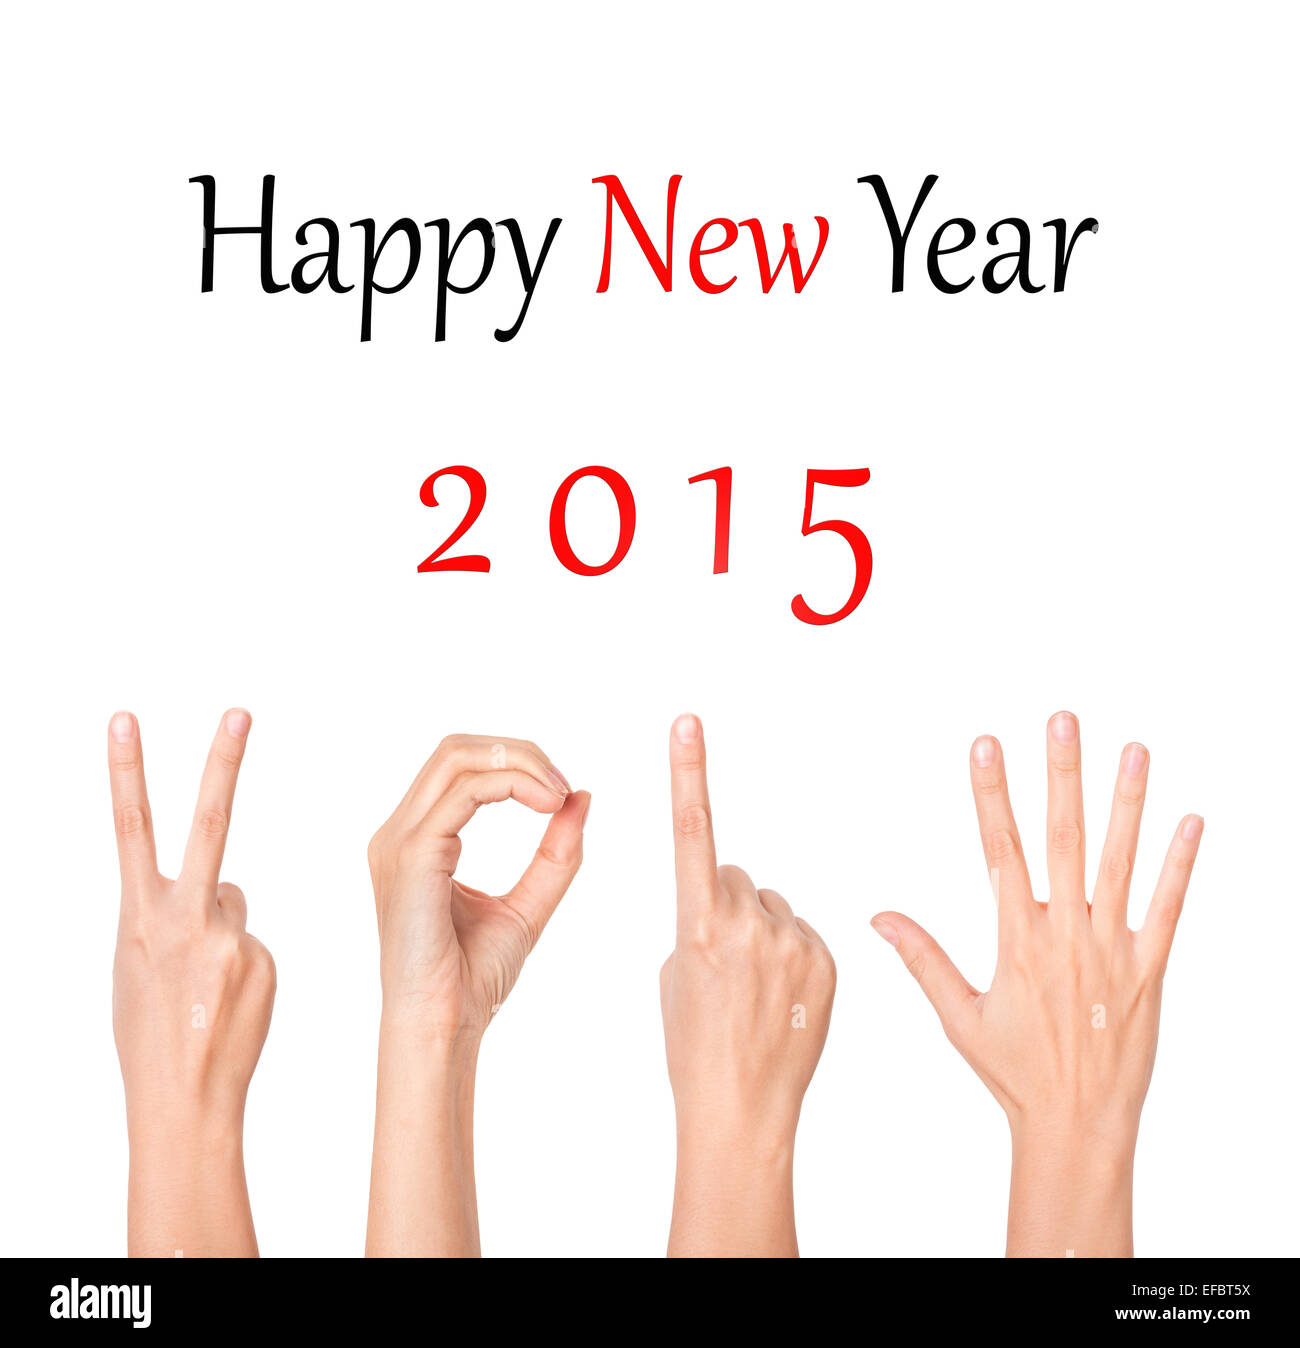 2015 new year Stock Photo